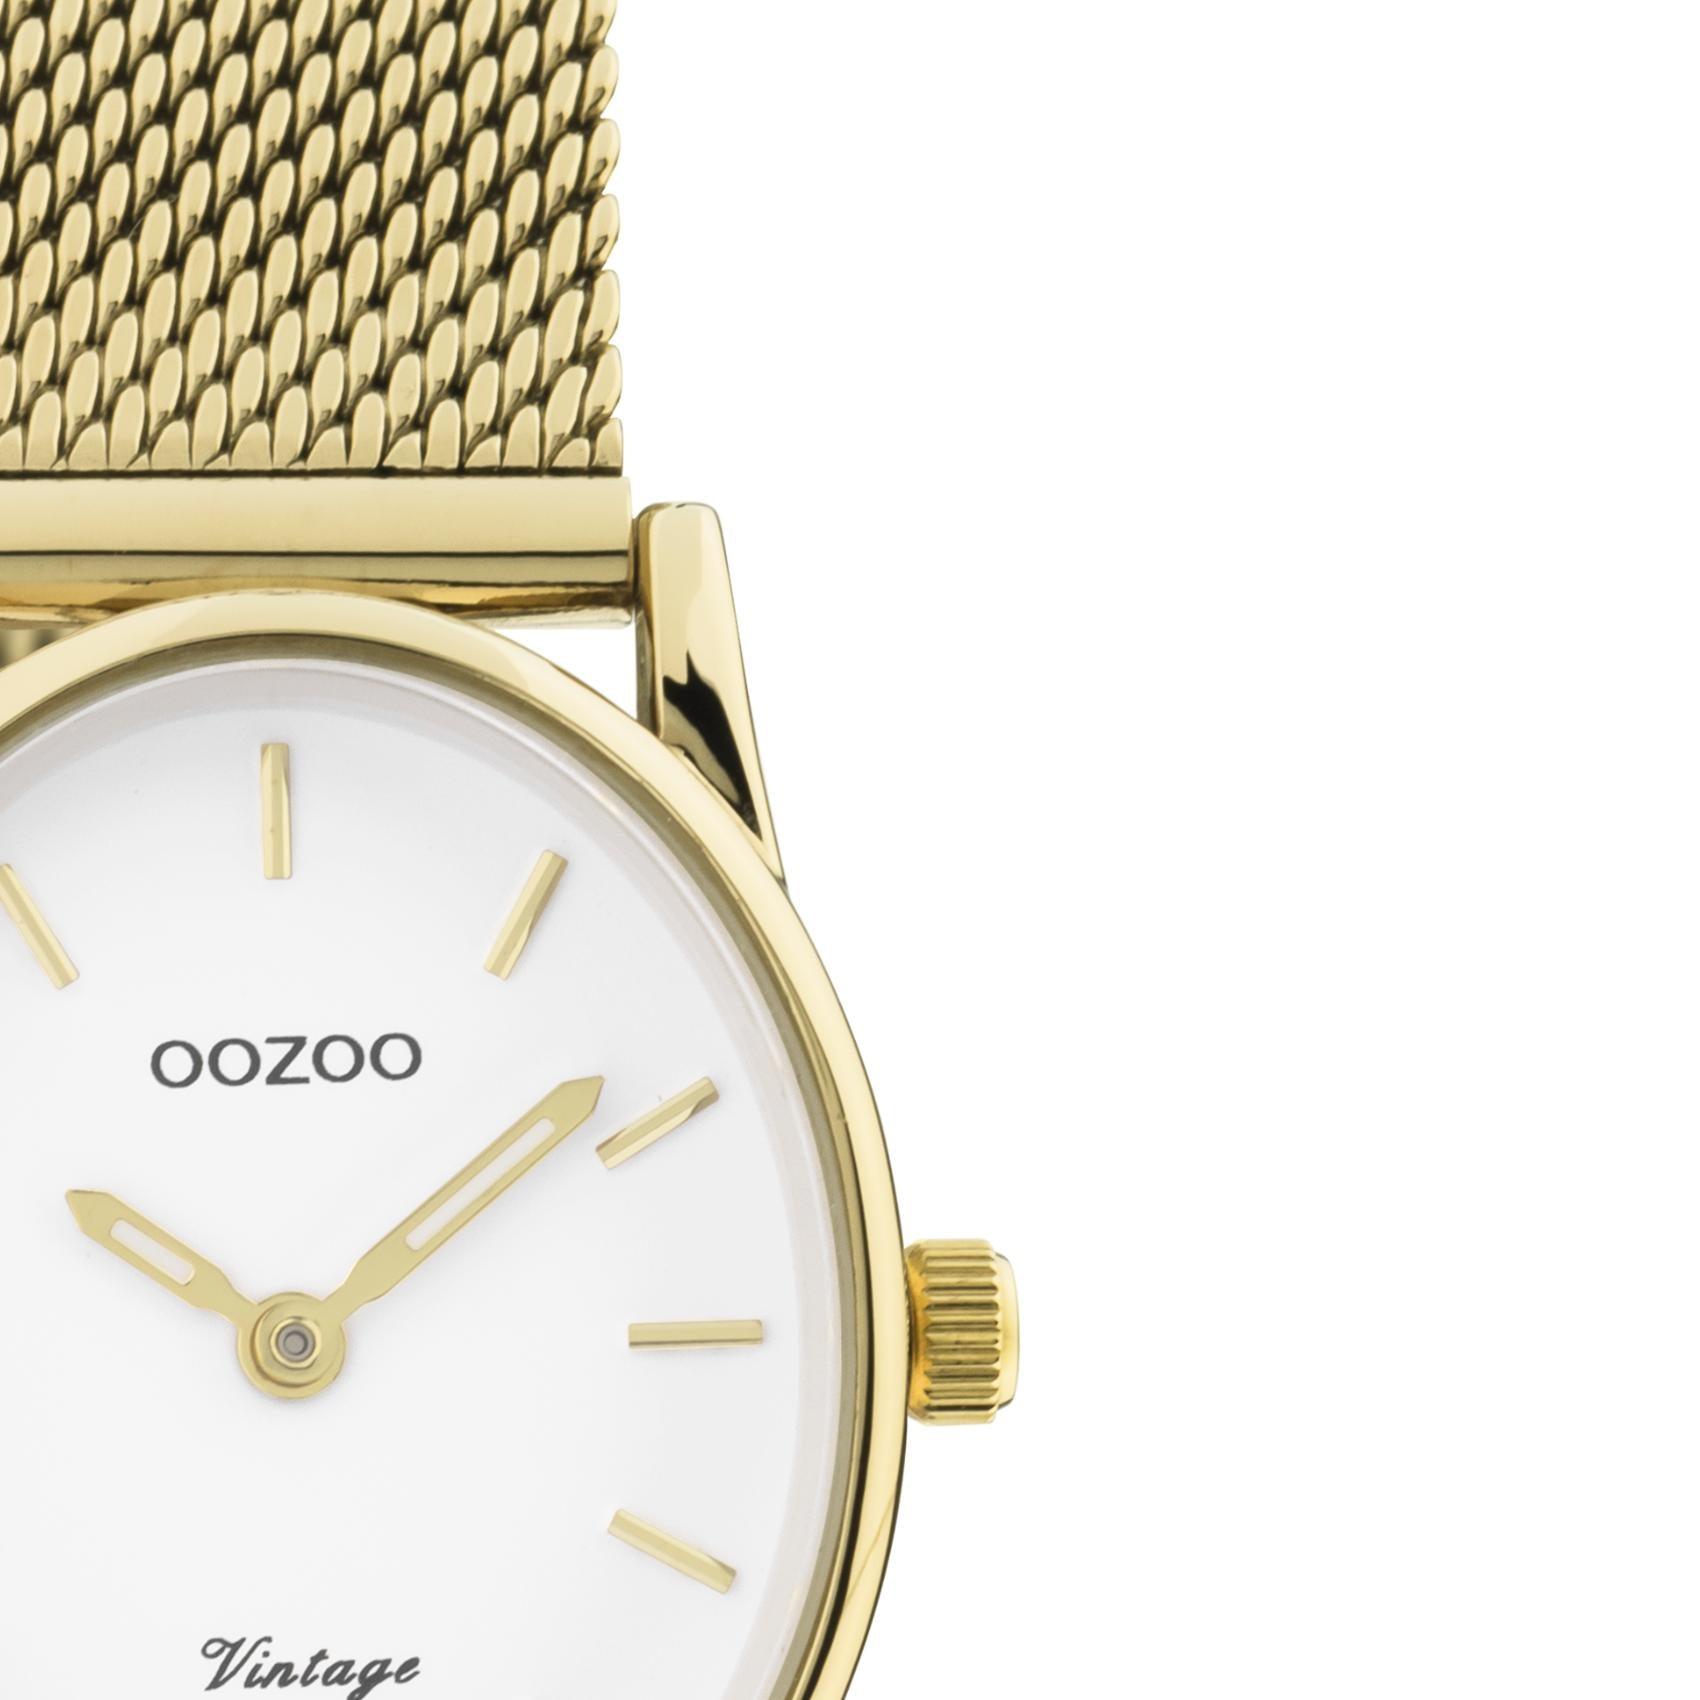 Οβάλ ρολόι Oozoo Vintage C20258 με χρυσό ατσάλινο μπρασελέ, άσπρο καντράν διαστάσεων 28Χ22mm και μηχανισμό μπαταρίας quartz.